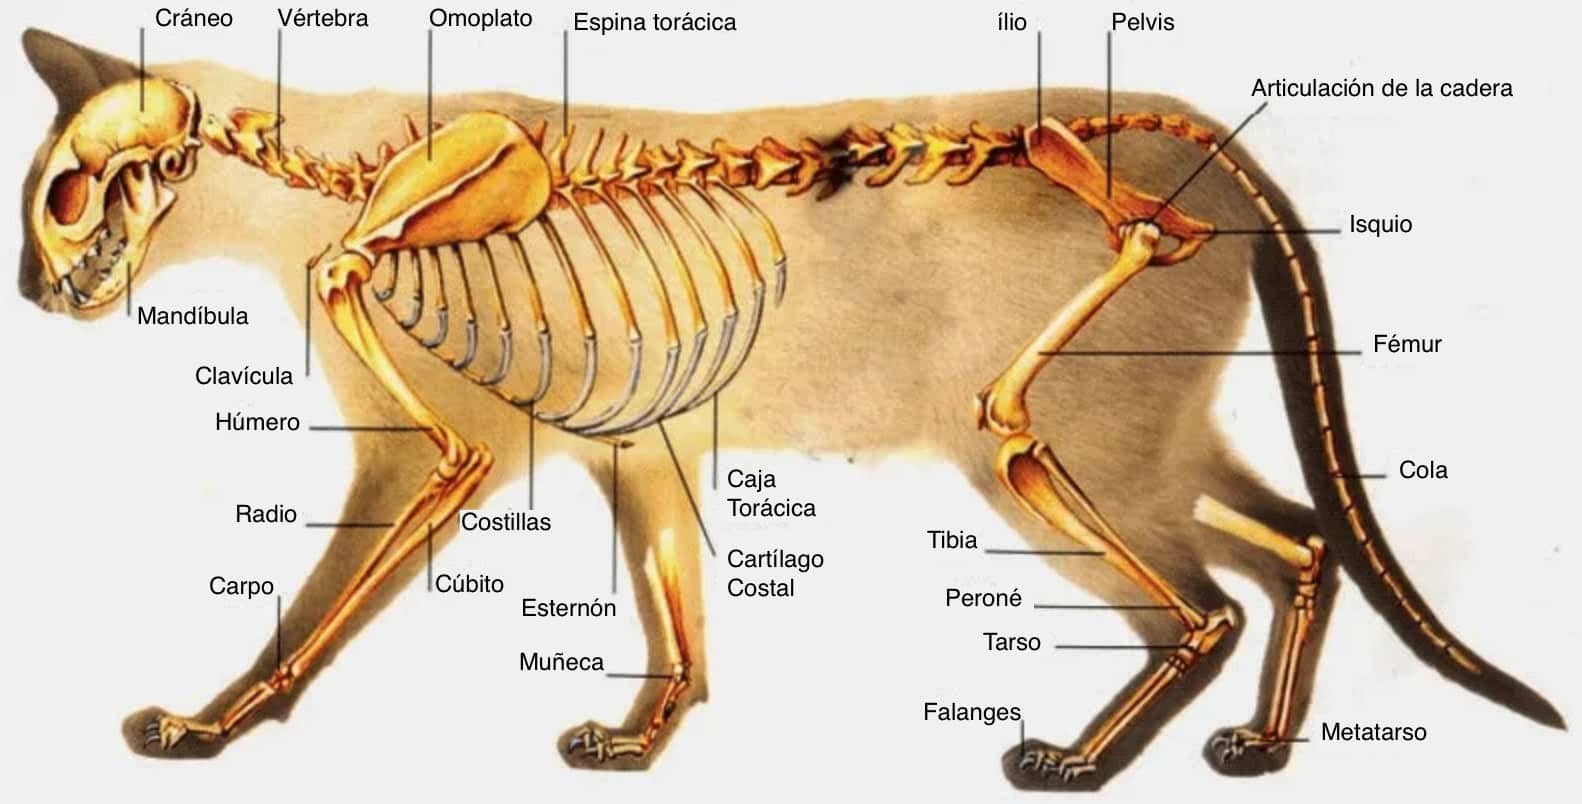 Anatomía osea de los gatos